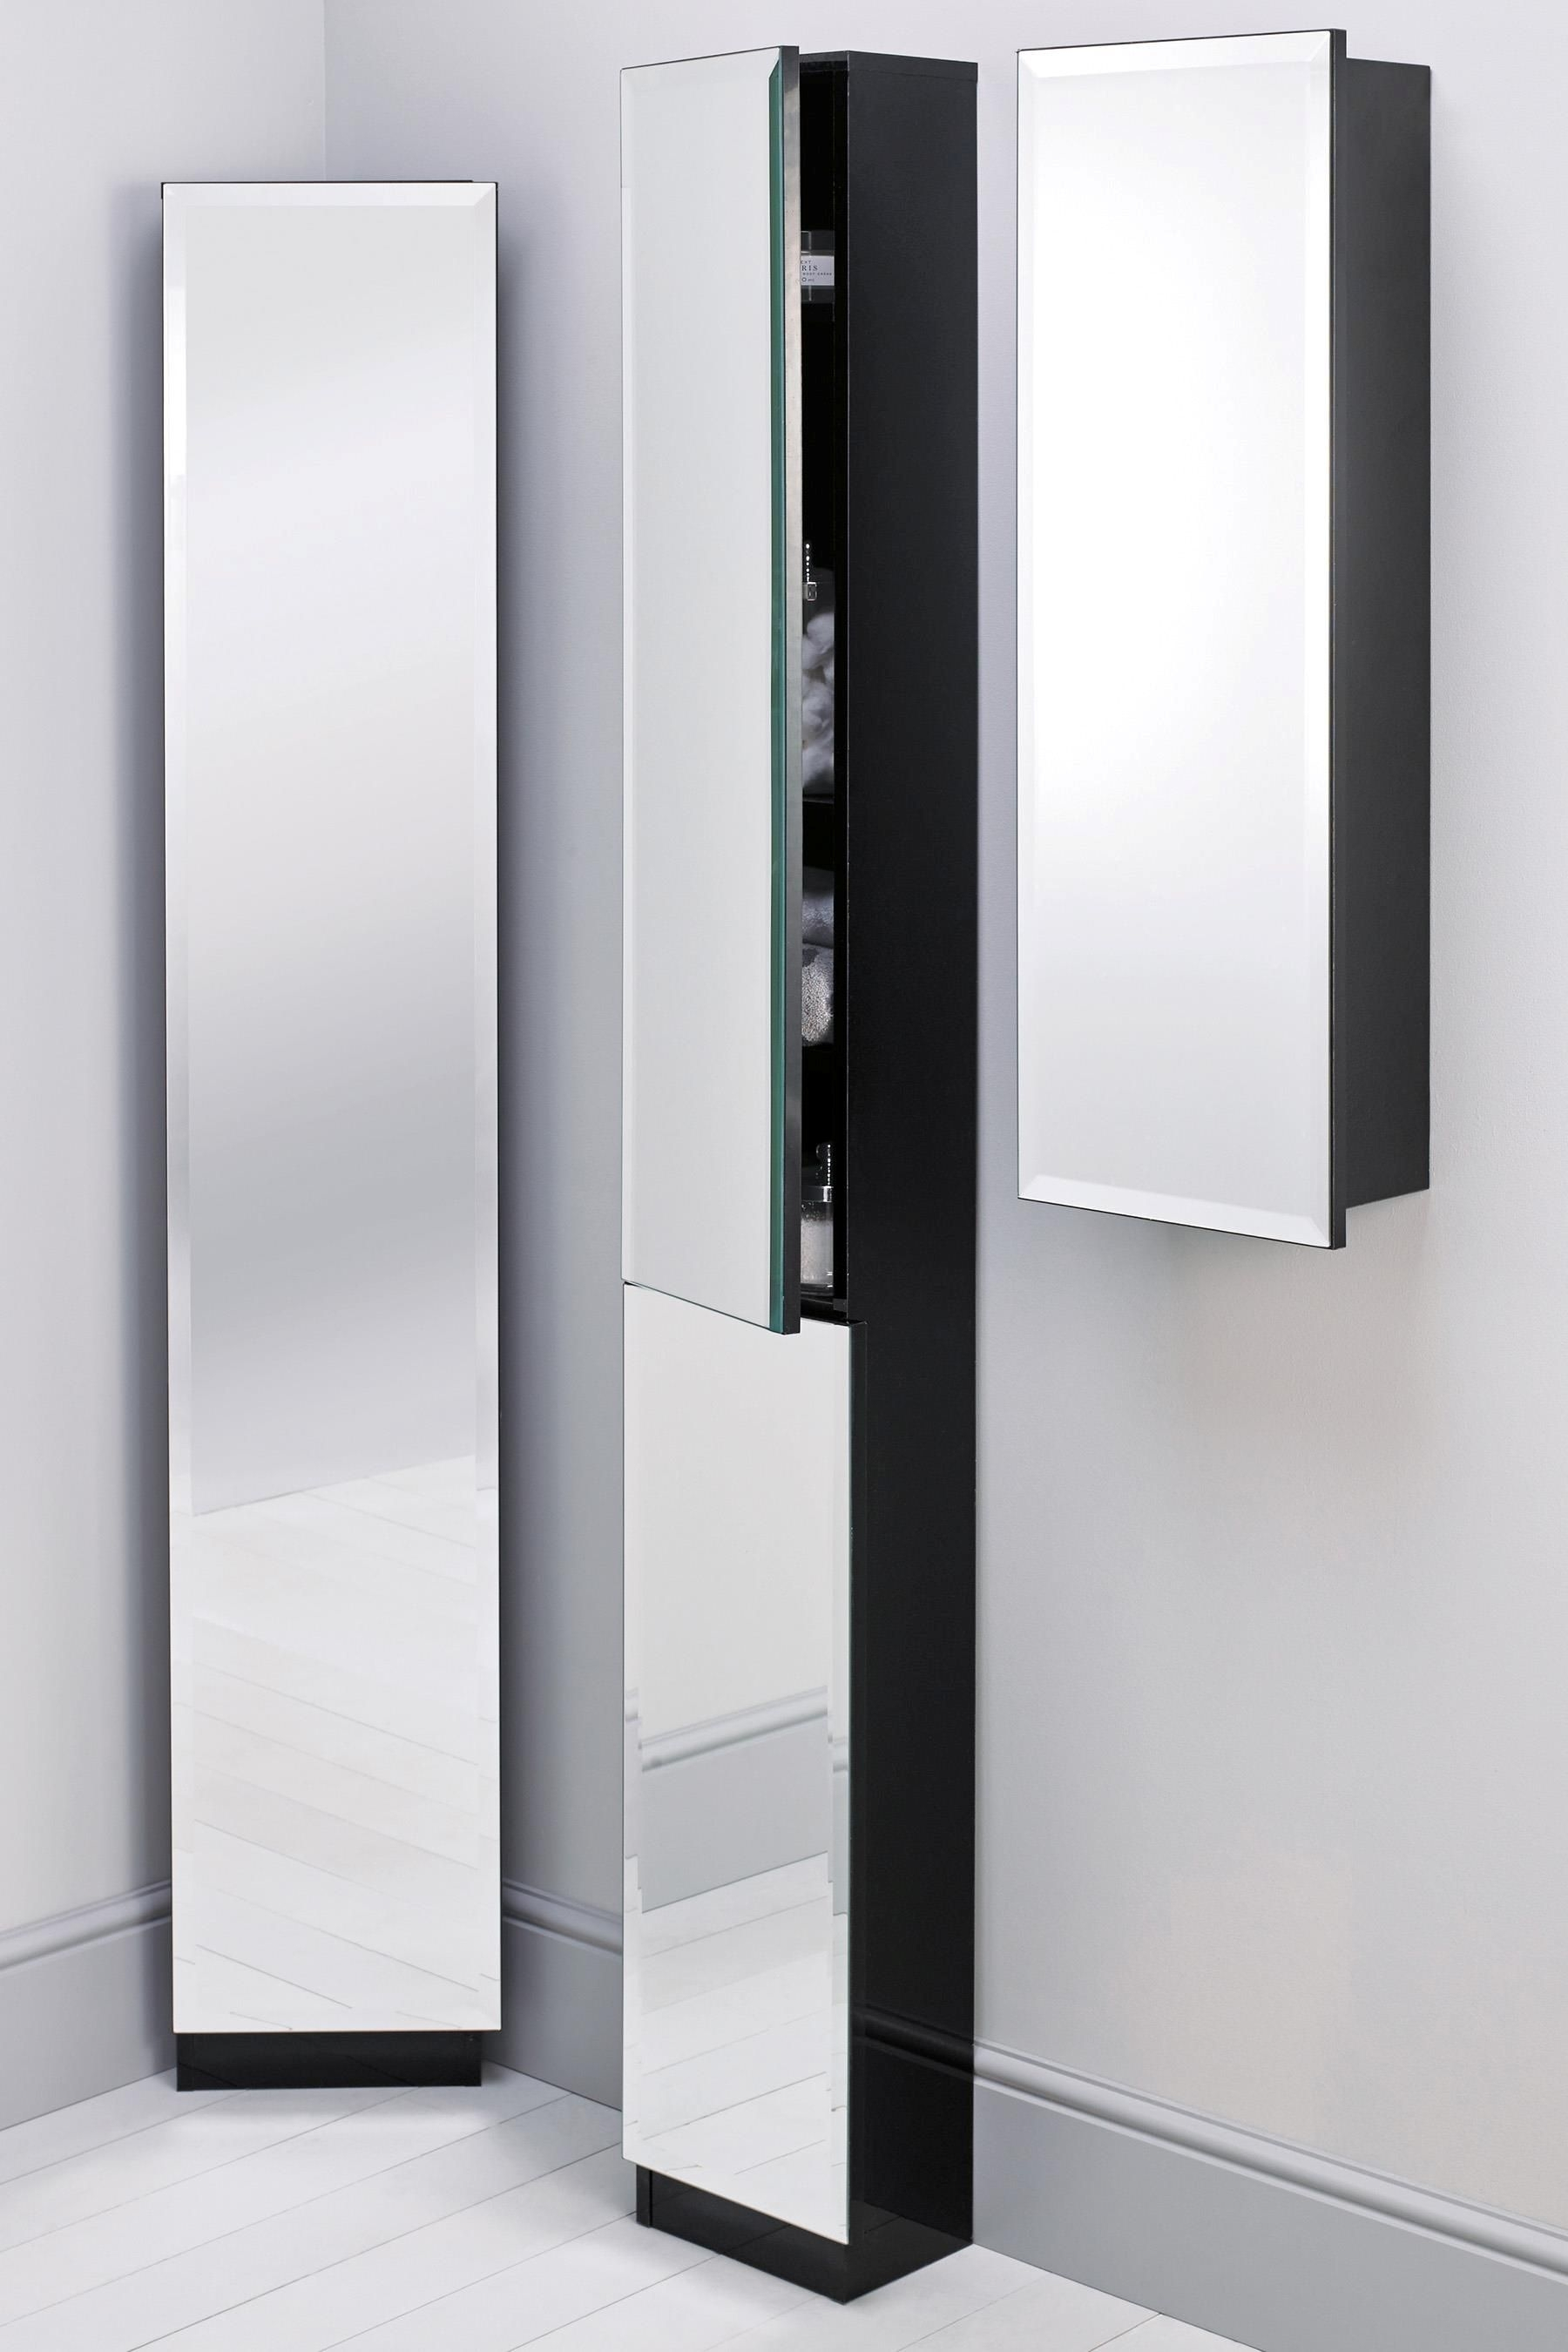 Mirrored Bathroom Floor Cabinet Floor Standing Mirrored Bathroom Cabinet intended for dimensions 1800 X 2700